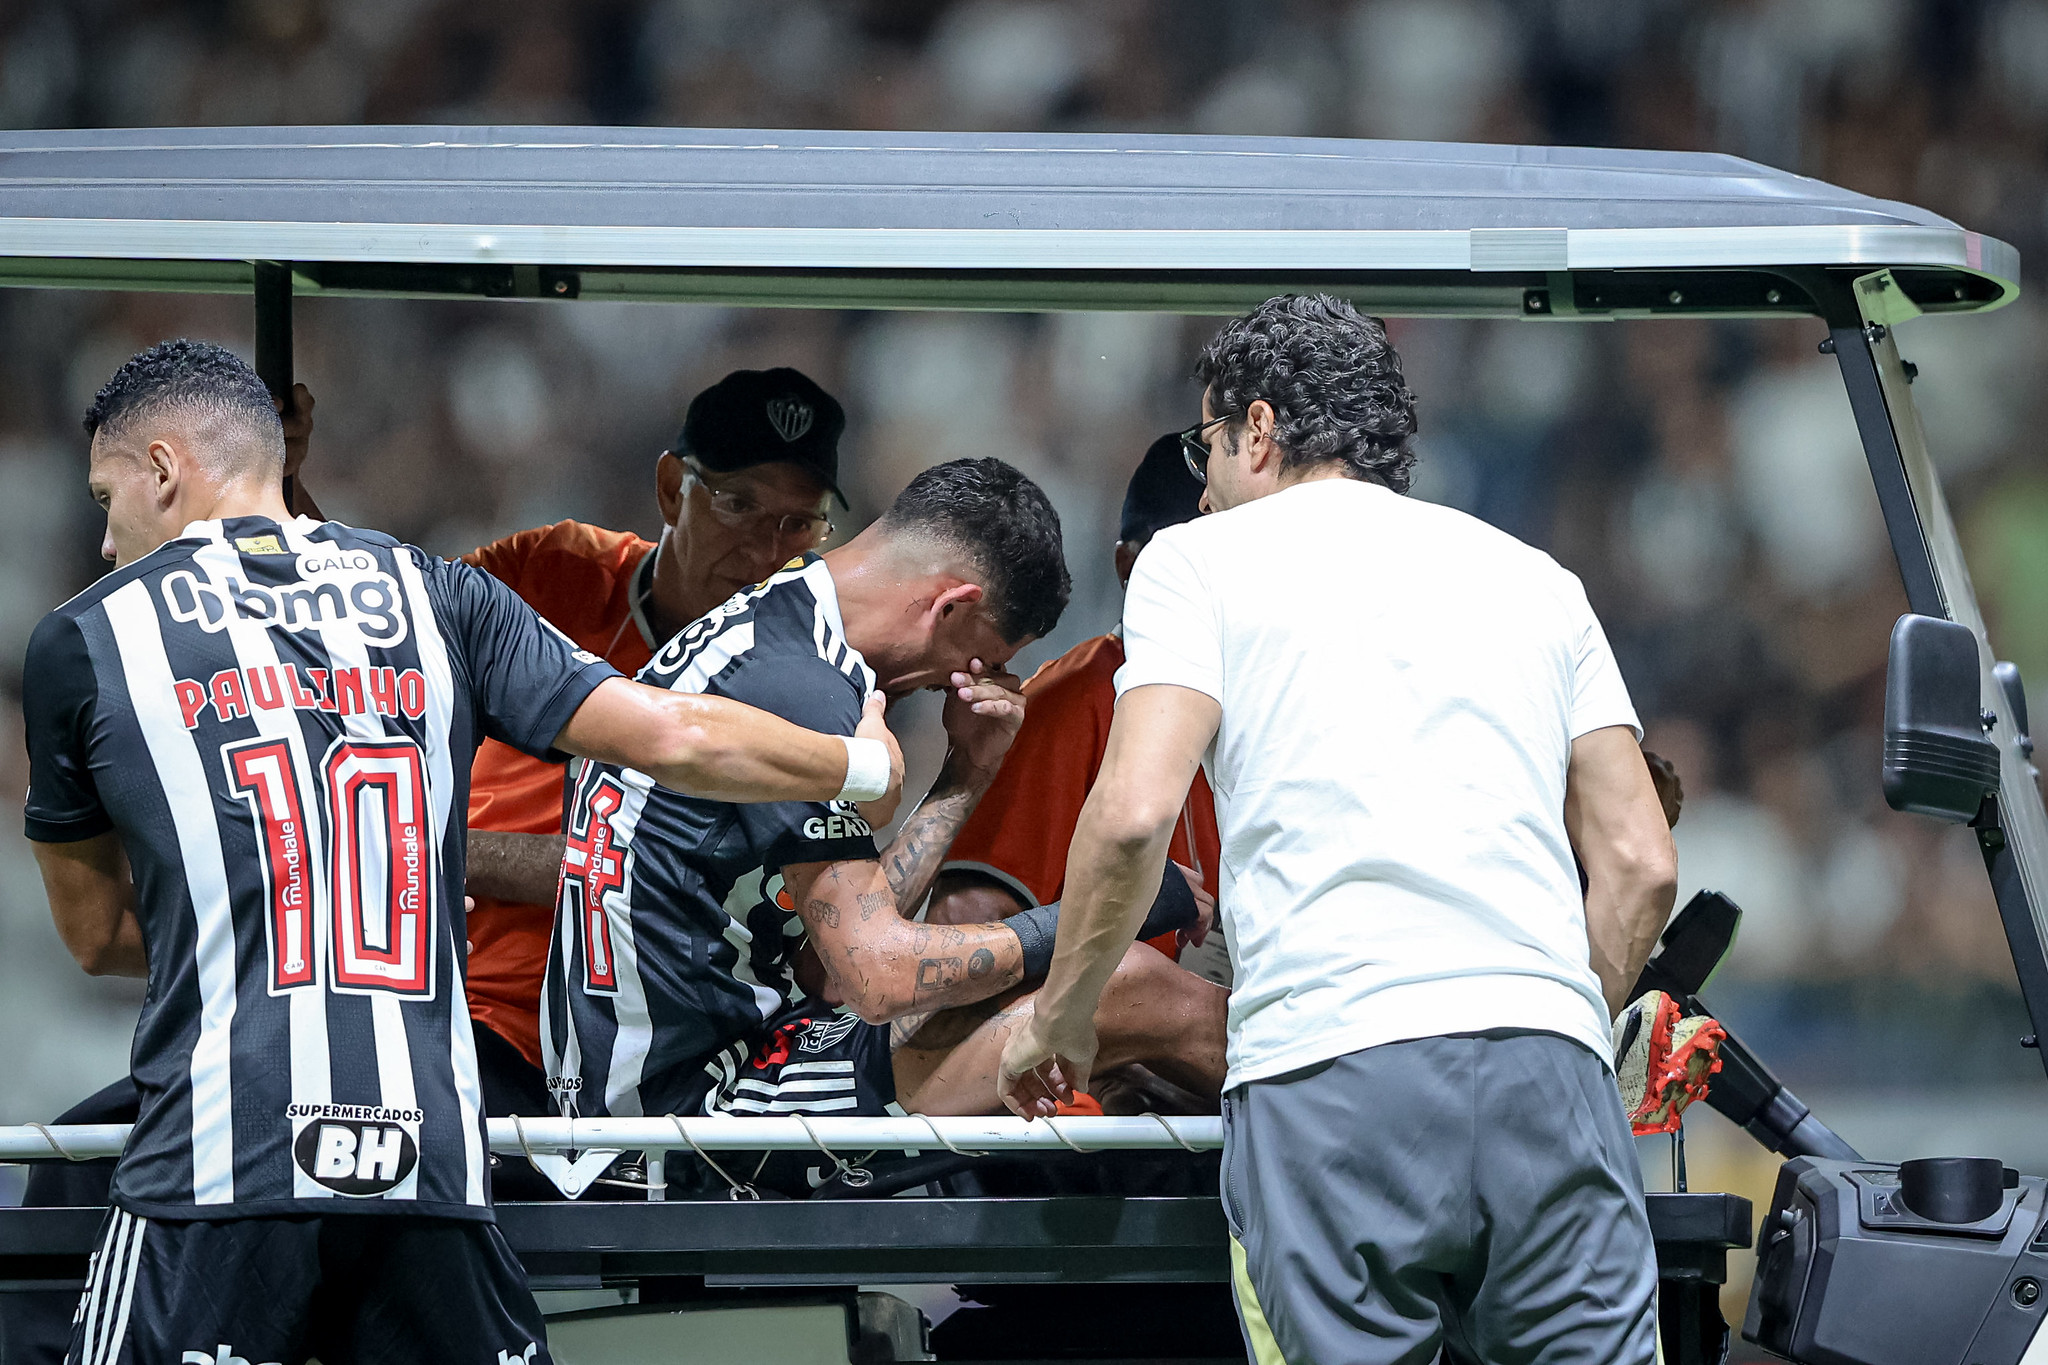 É a segunda lesão do atleta em menos de um mês (Foto: Pedro Souza /Atlético-MG)